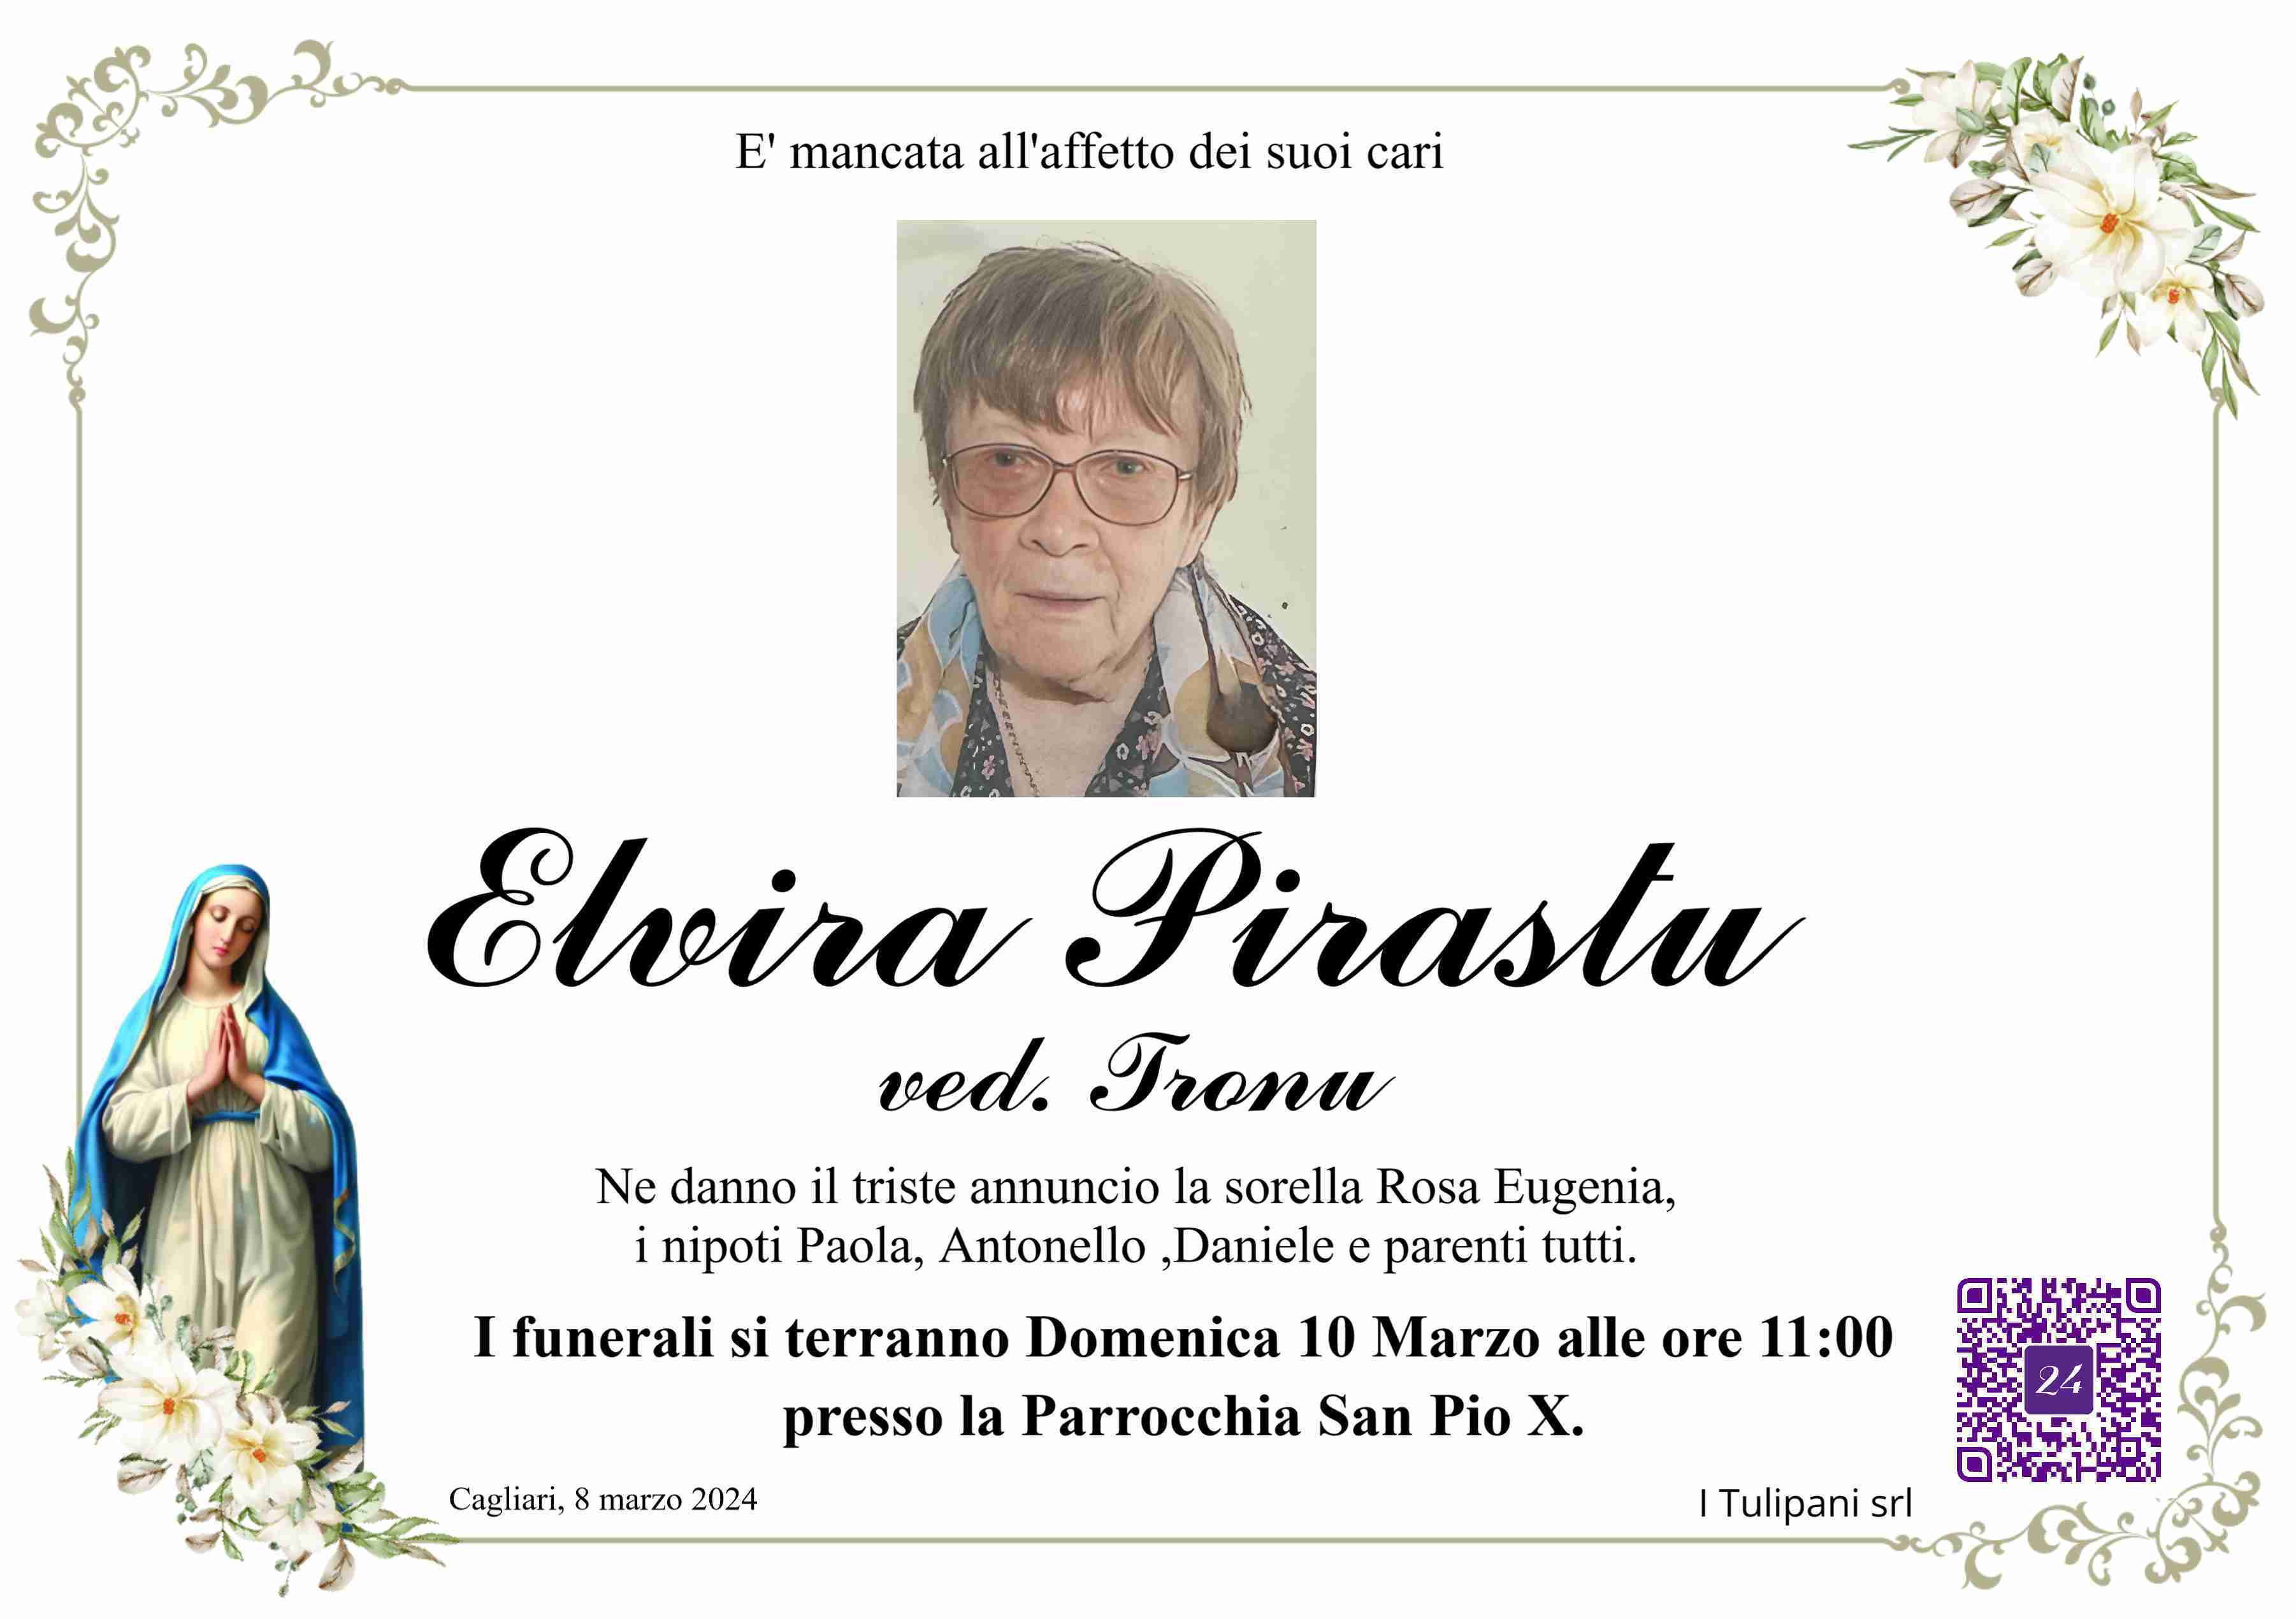 Elvira Pirastu